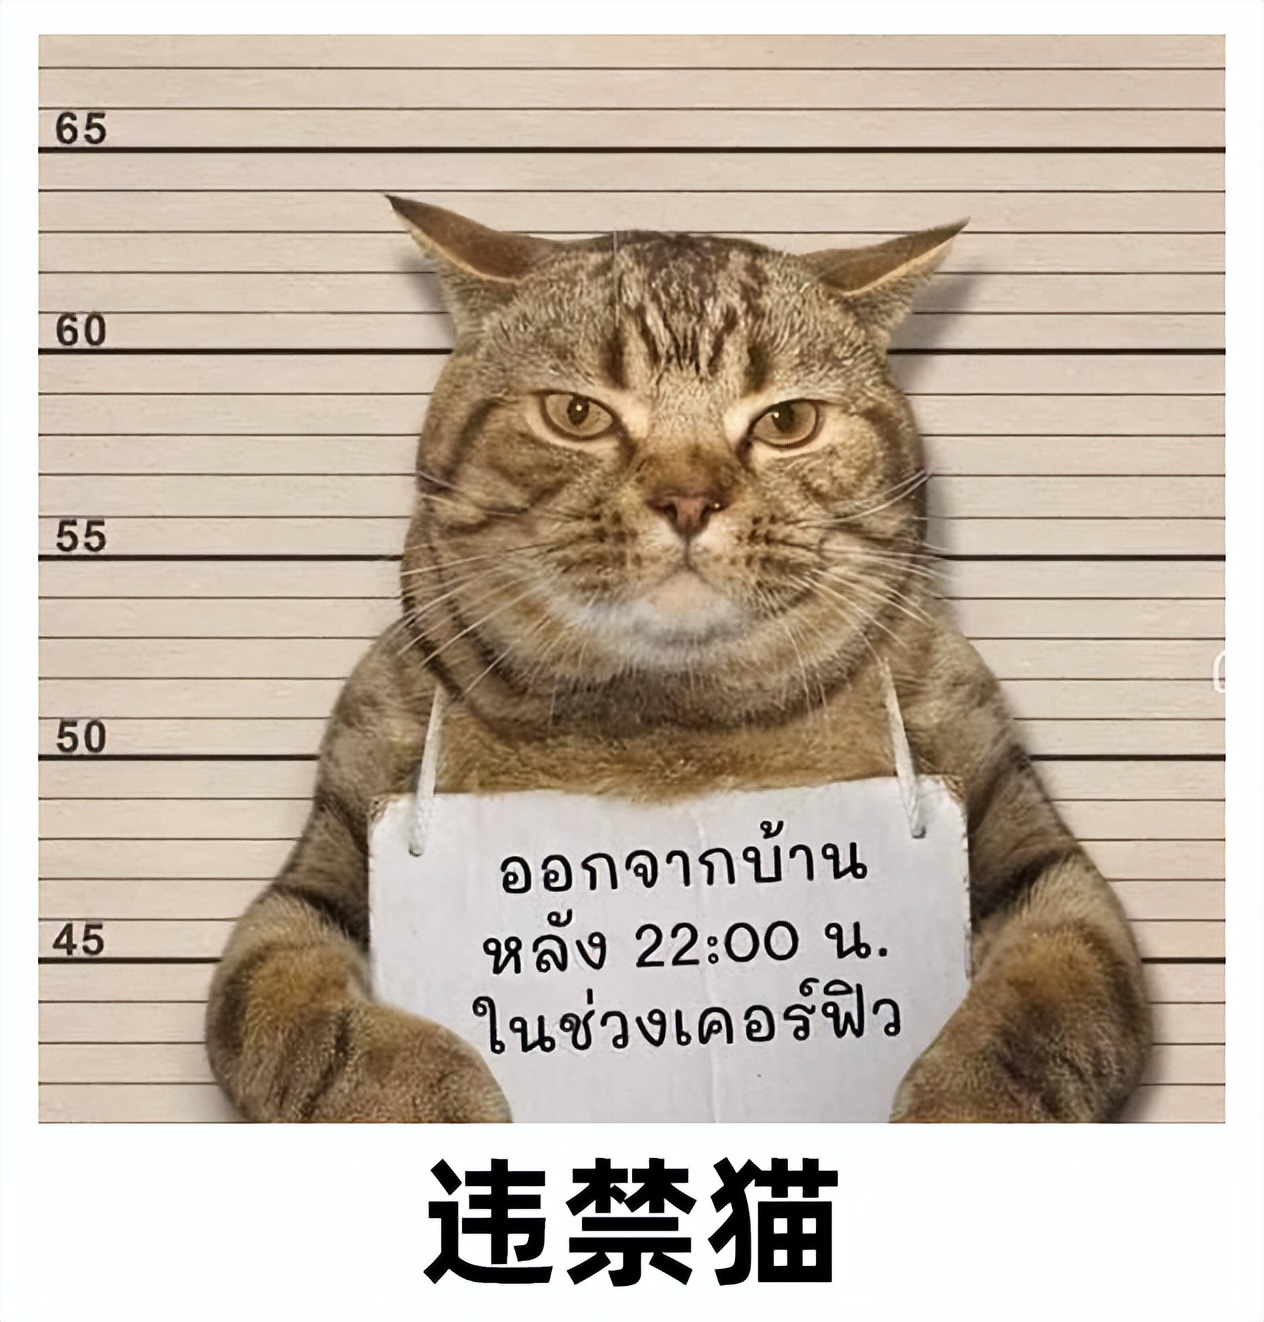 这只猫竟然是真的？盘点7个犯罪被逮捕的动物，人类可真奇葩！ - 哔哩哔哩